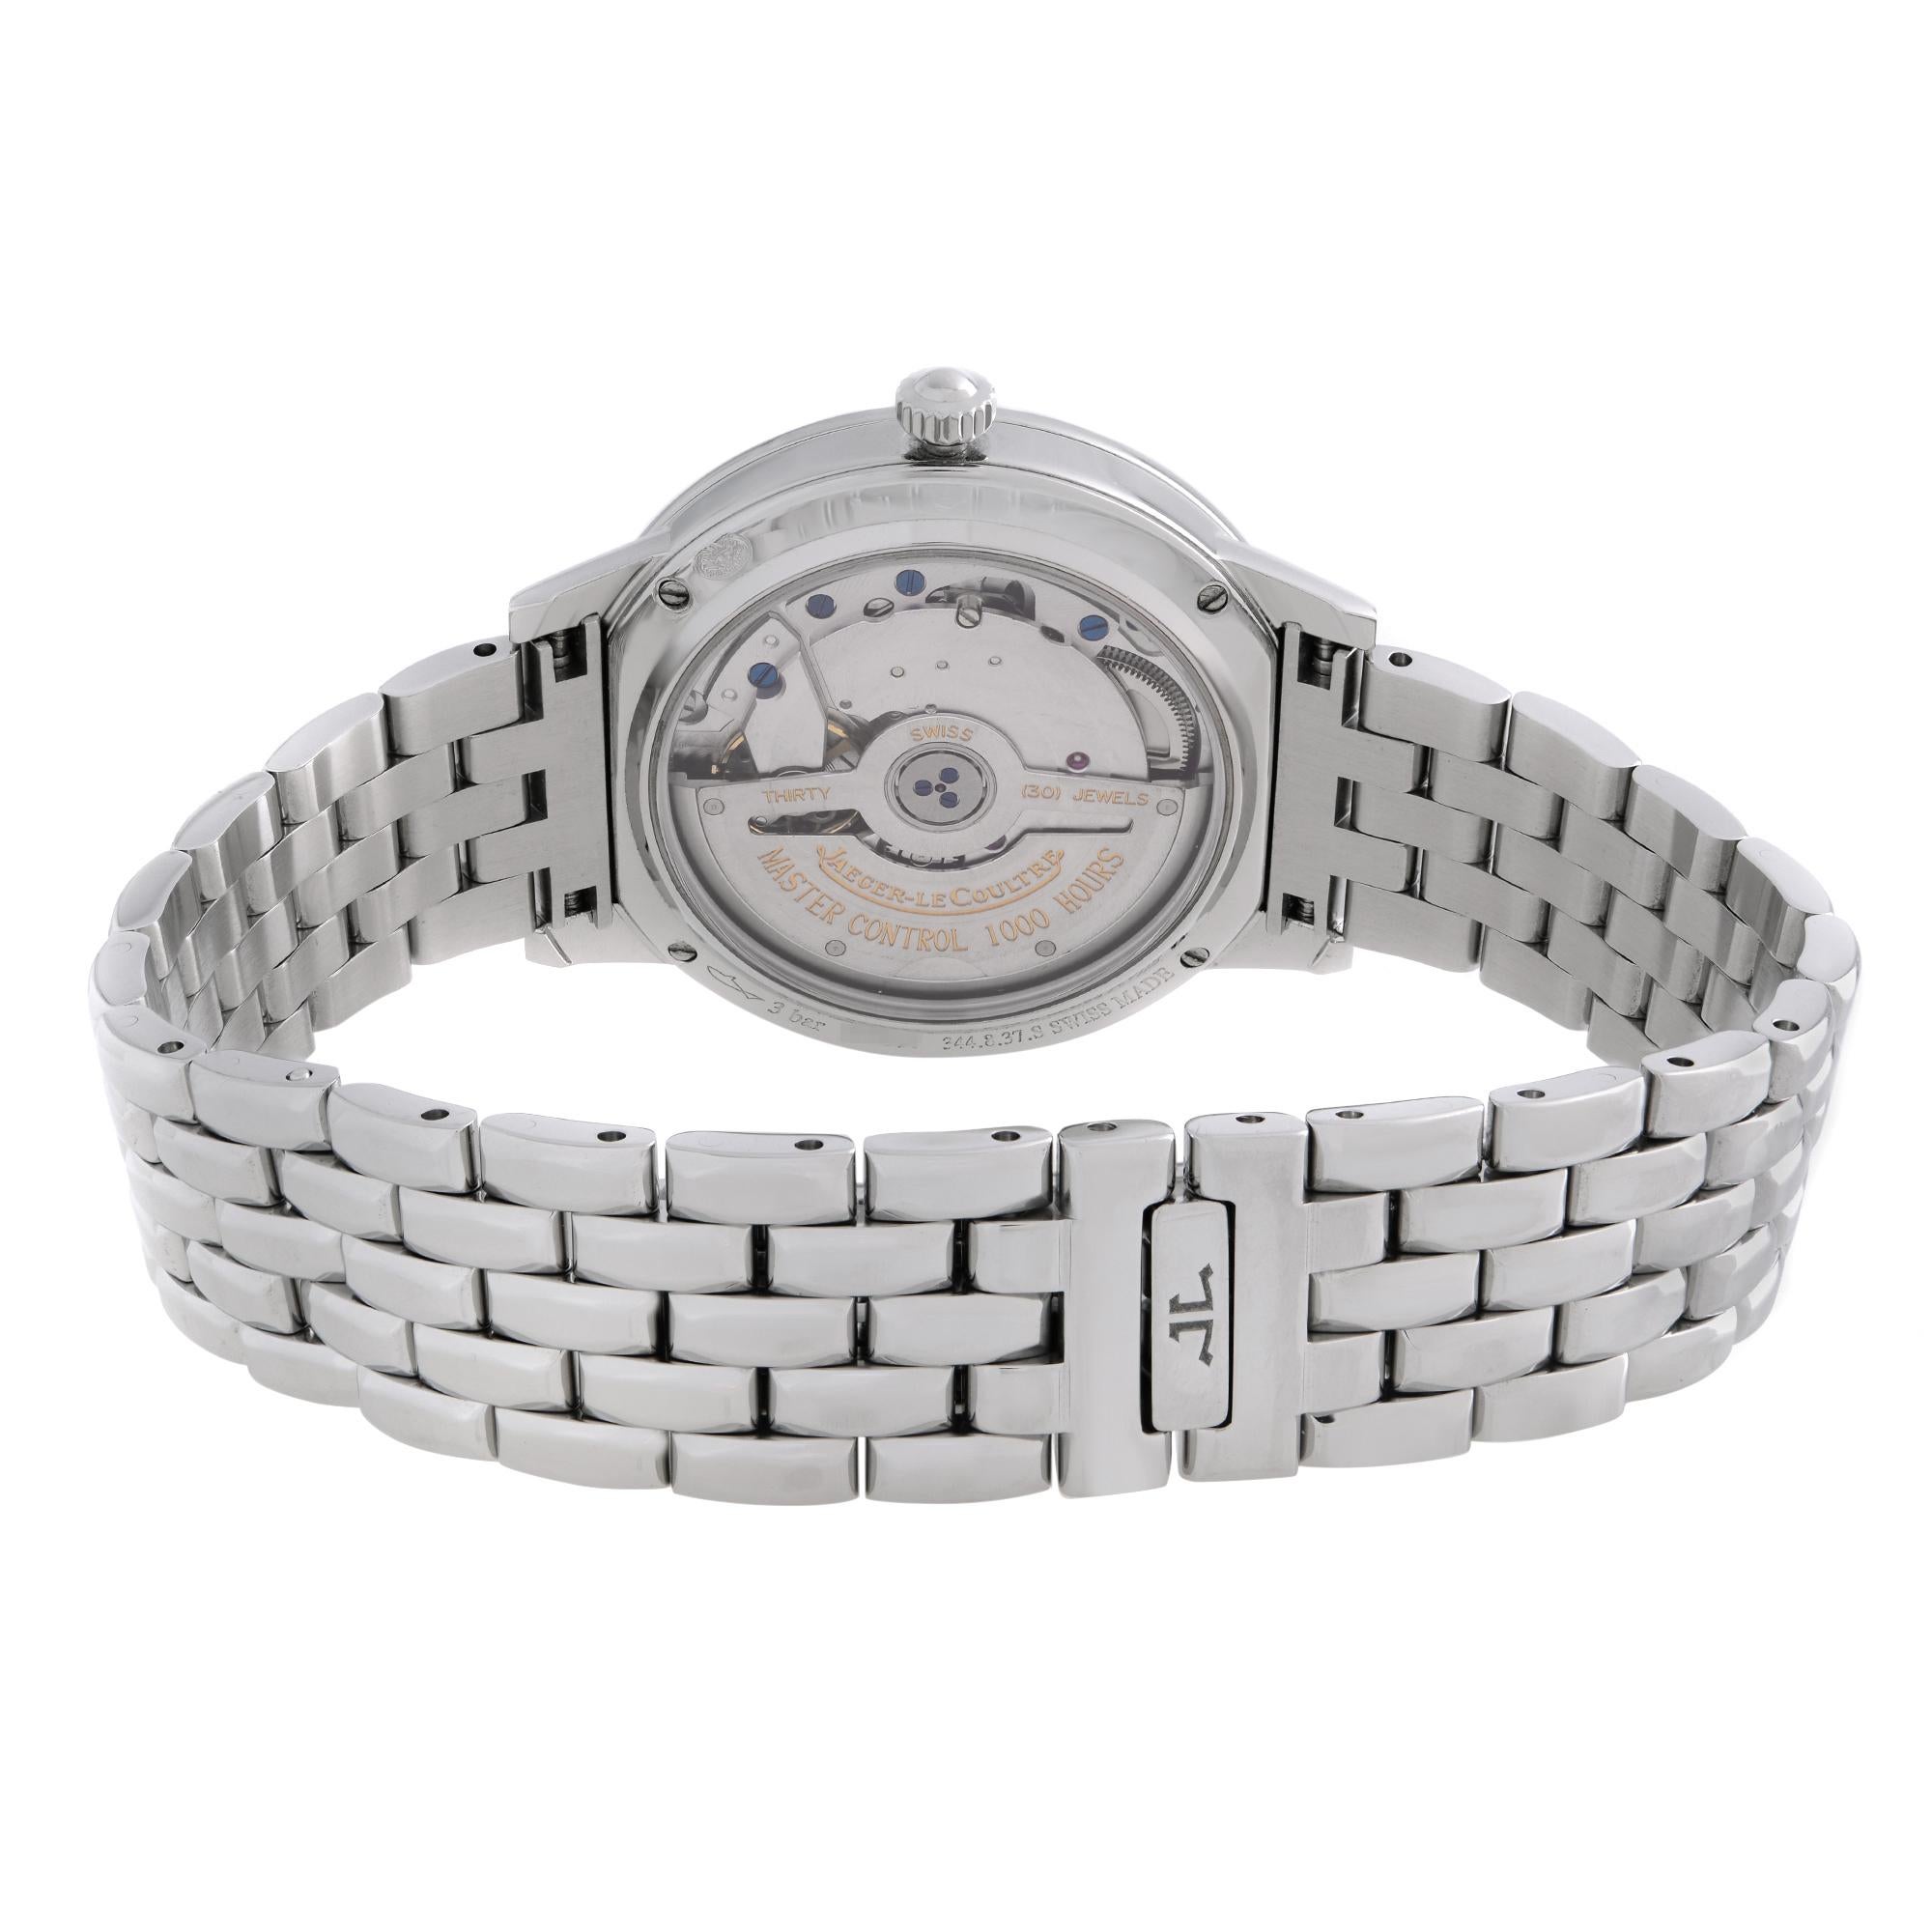 Jaeger-LeCoultre Rendez-Vous Steel Diamond Silver Dial Ladies Watch Q3448120 1